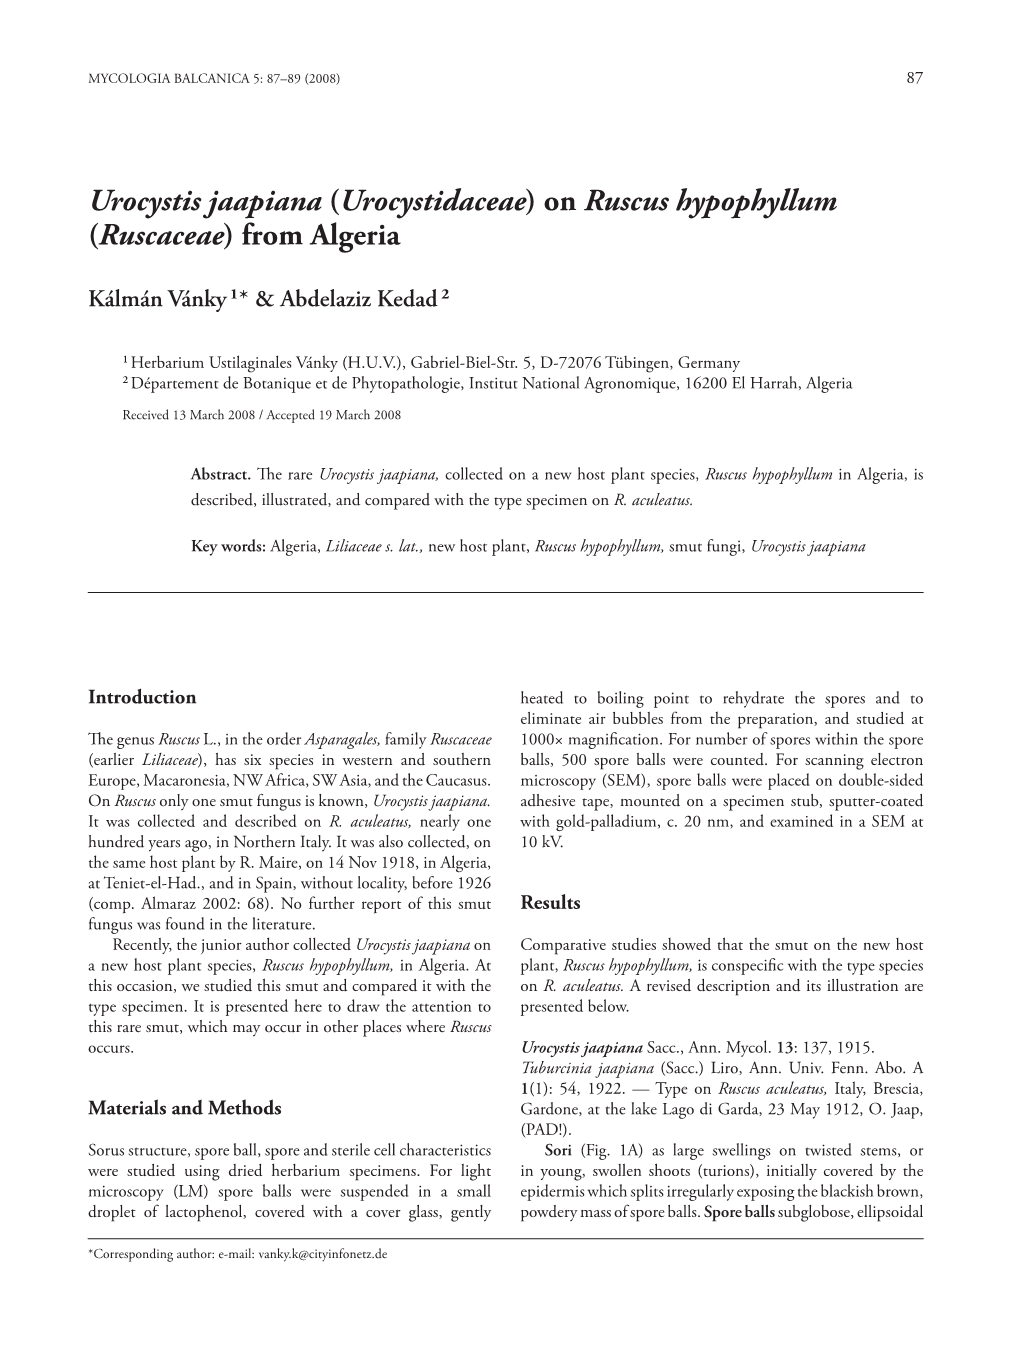 Urocystis Jaapiana (Urocystidaceae) on Ruscus Hypophyllum (Ruscaceae) from Algeria